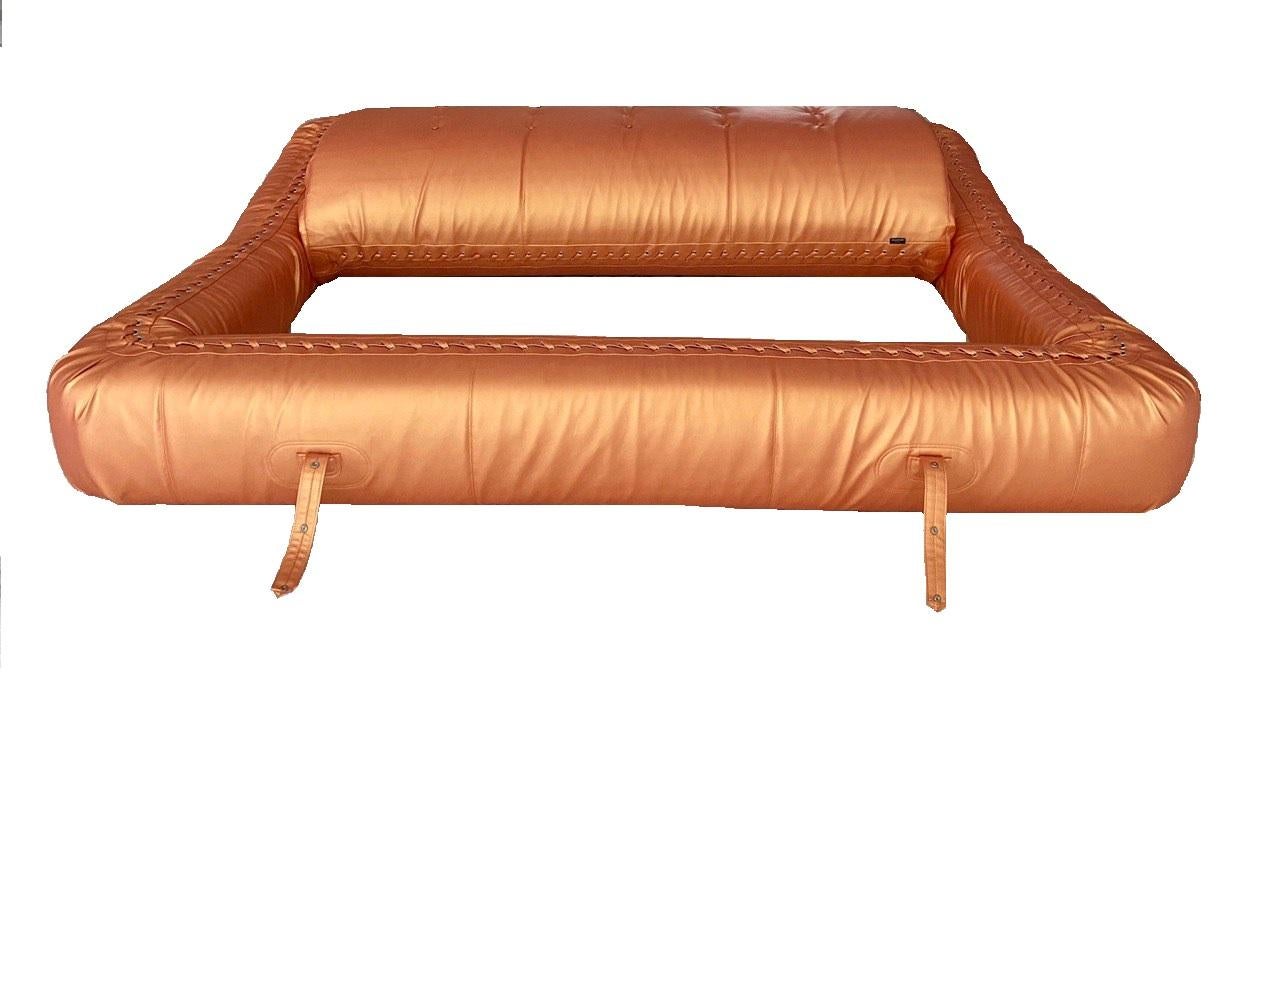 atollo leather sofa